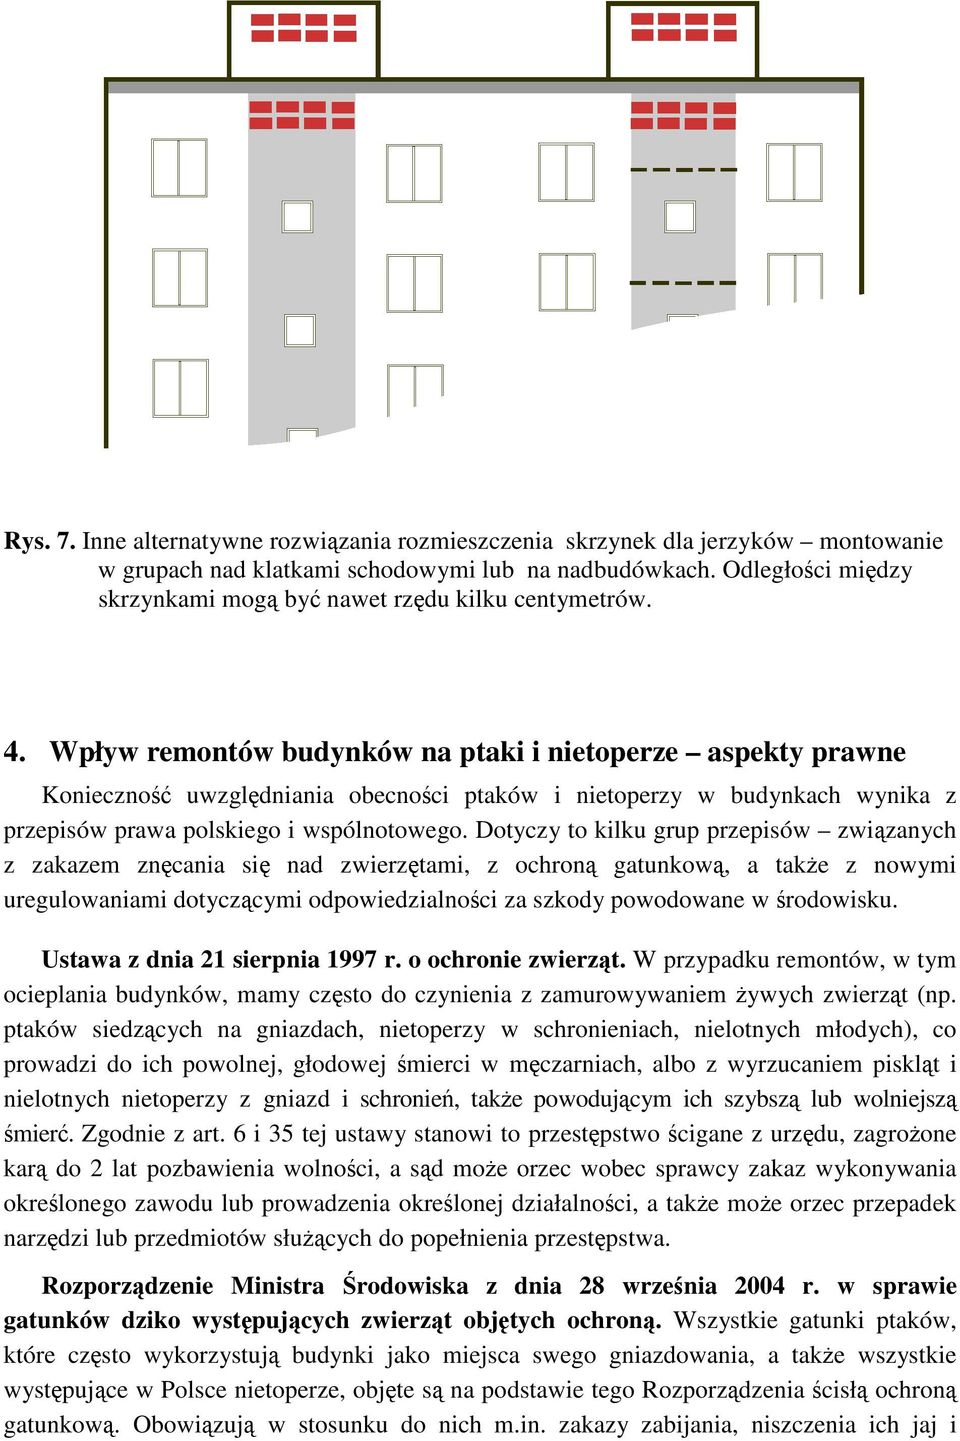 Wpływ remontów budynków na ptaki i nietoperze aspekty prawne Konieczno uwzgldniania obecnoci ptaków i nietoperzy w budynkach wynika z przepisów prawa polskiego i wspólnotowego.